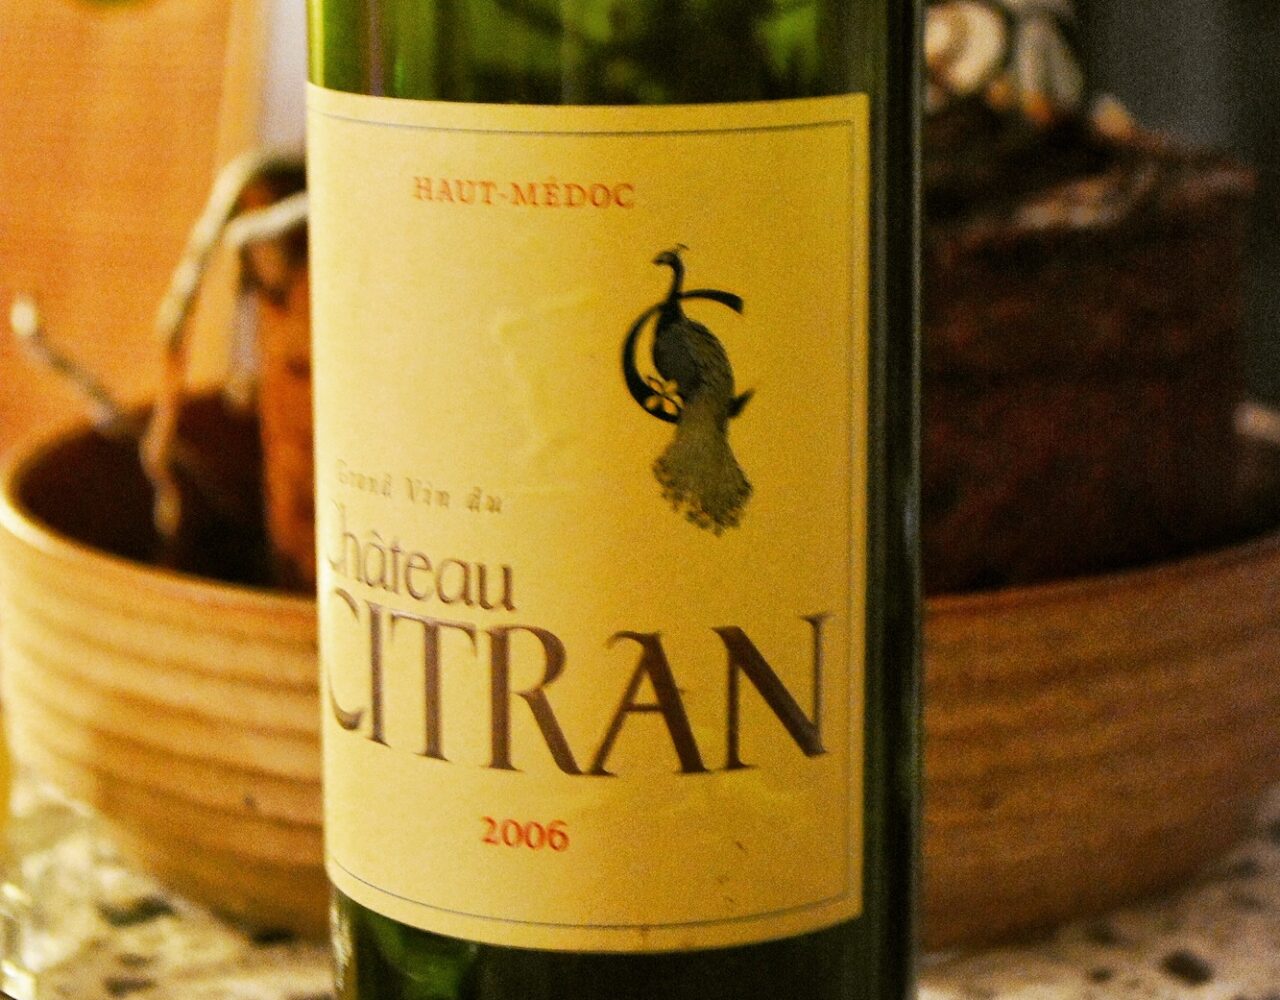 Château Citran 2006: Review